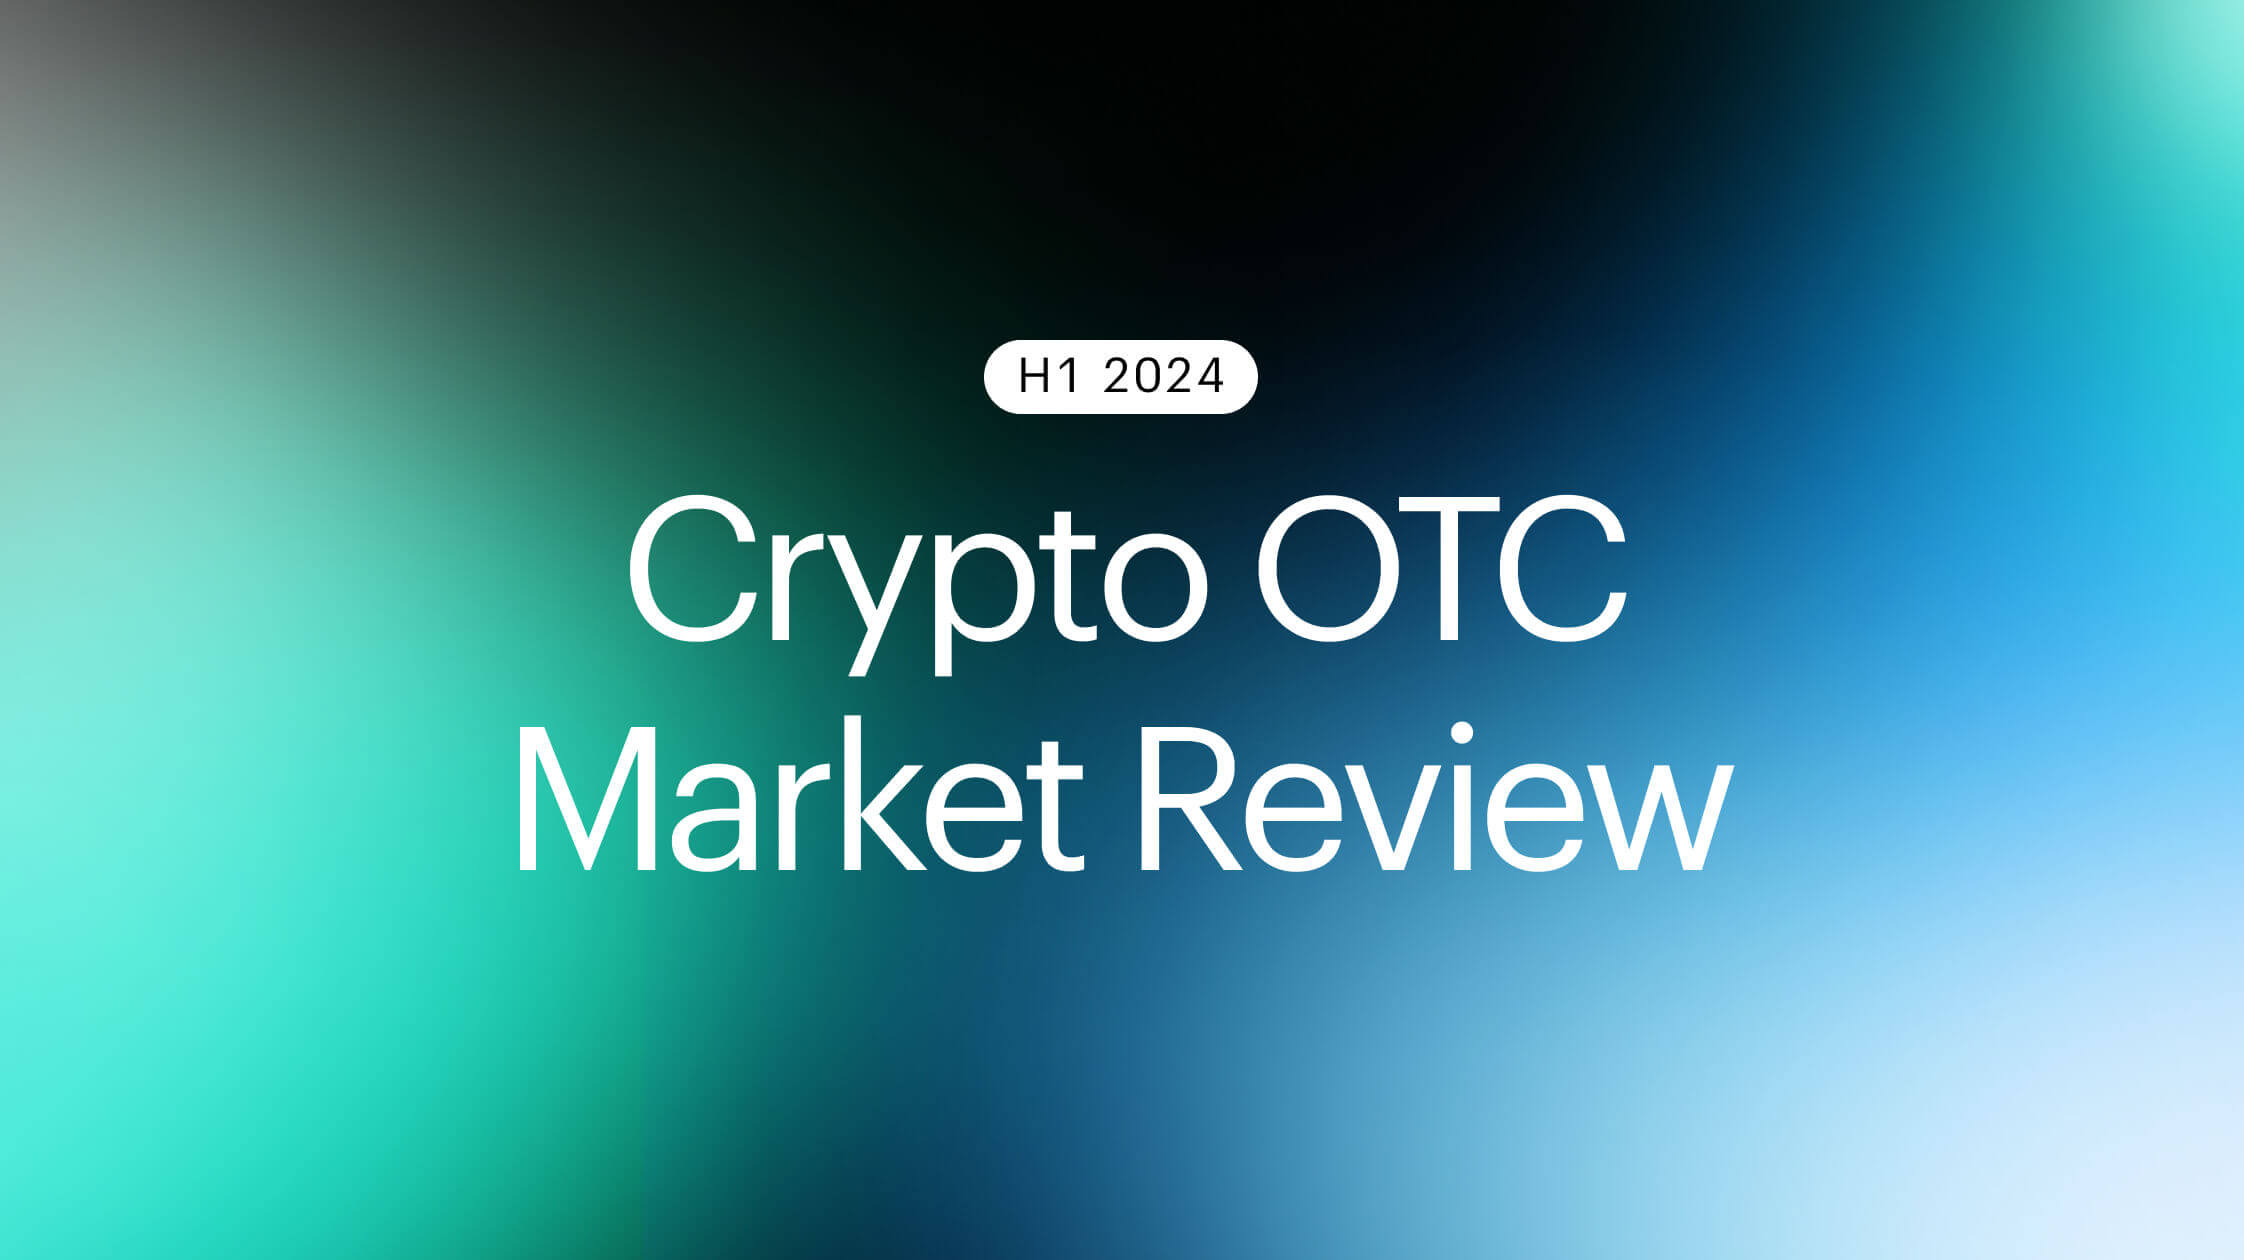 Crypto OTC Review: H1 2024